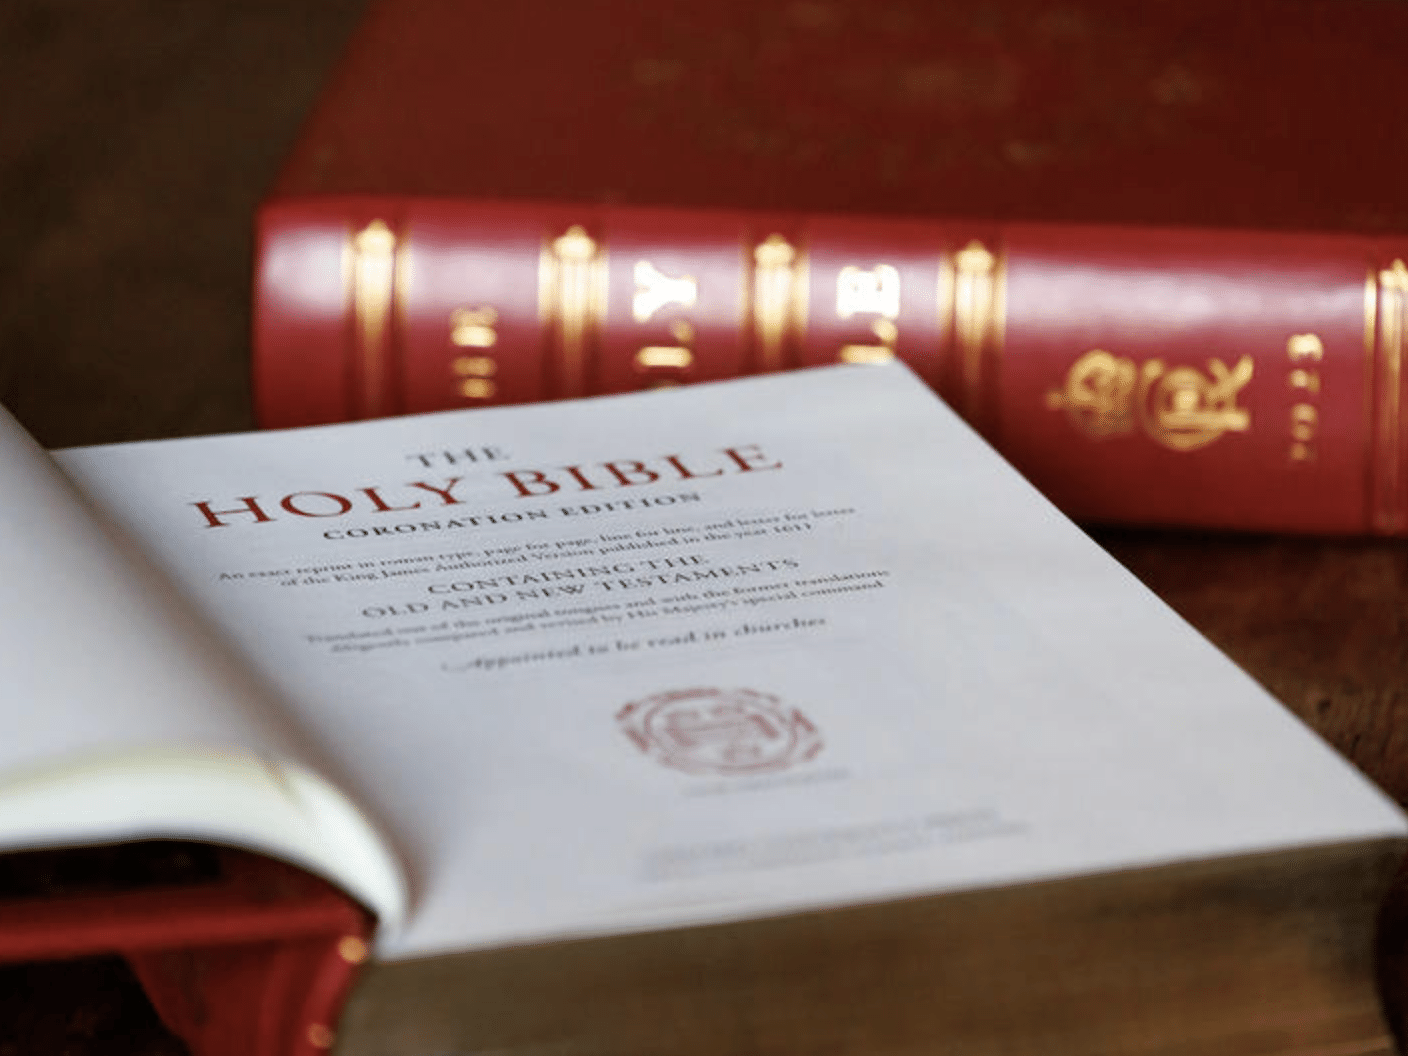 18 versículos para ensinar teu filho no caminho - Bíblia